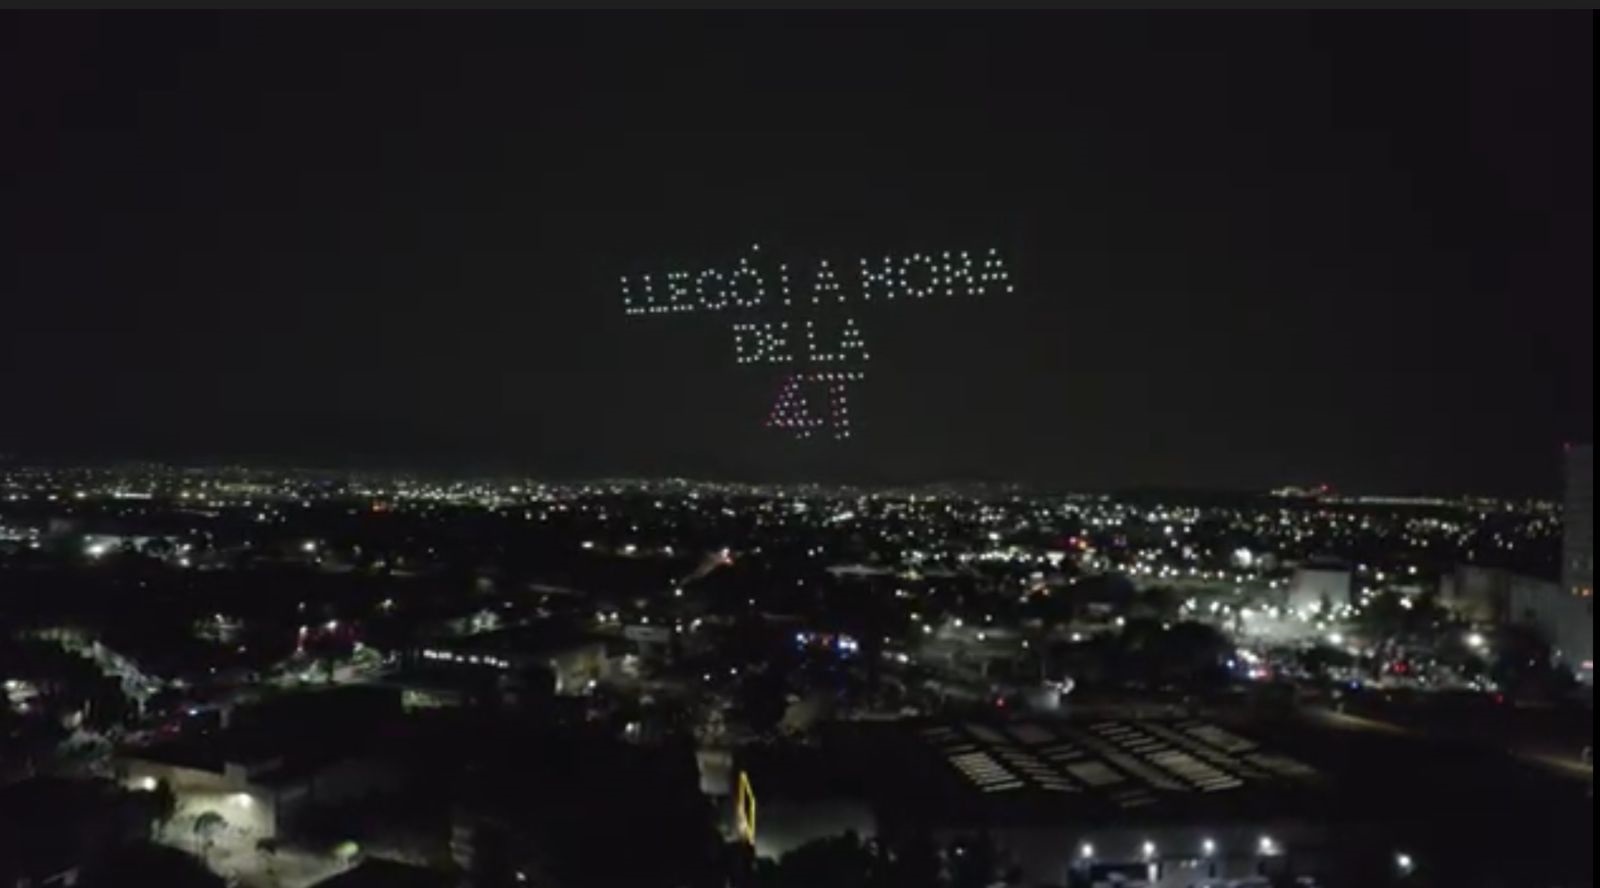 Con drones en el cielo, exigen agua en Cuautitlán Izcalli en inicio de campaña de Daniel Serrano